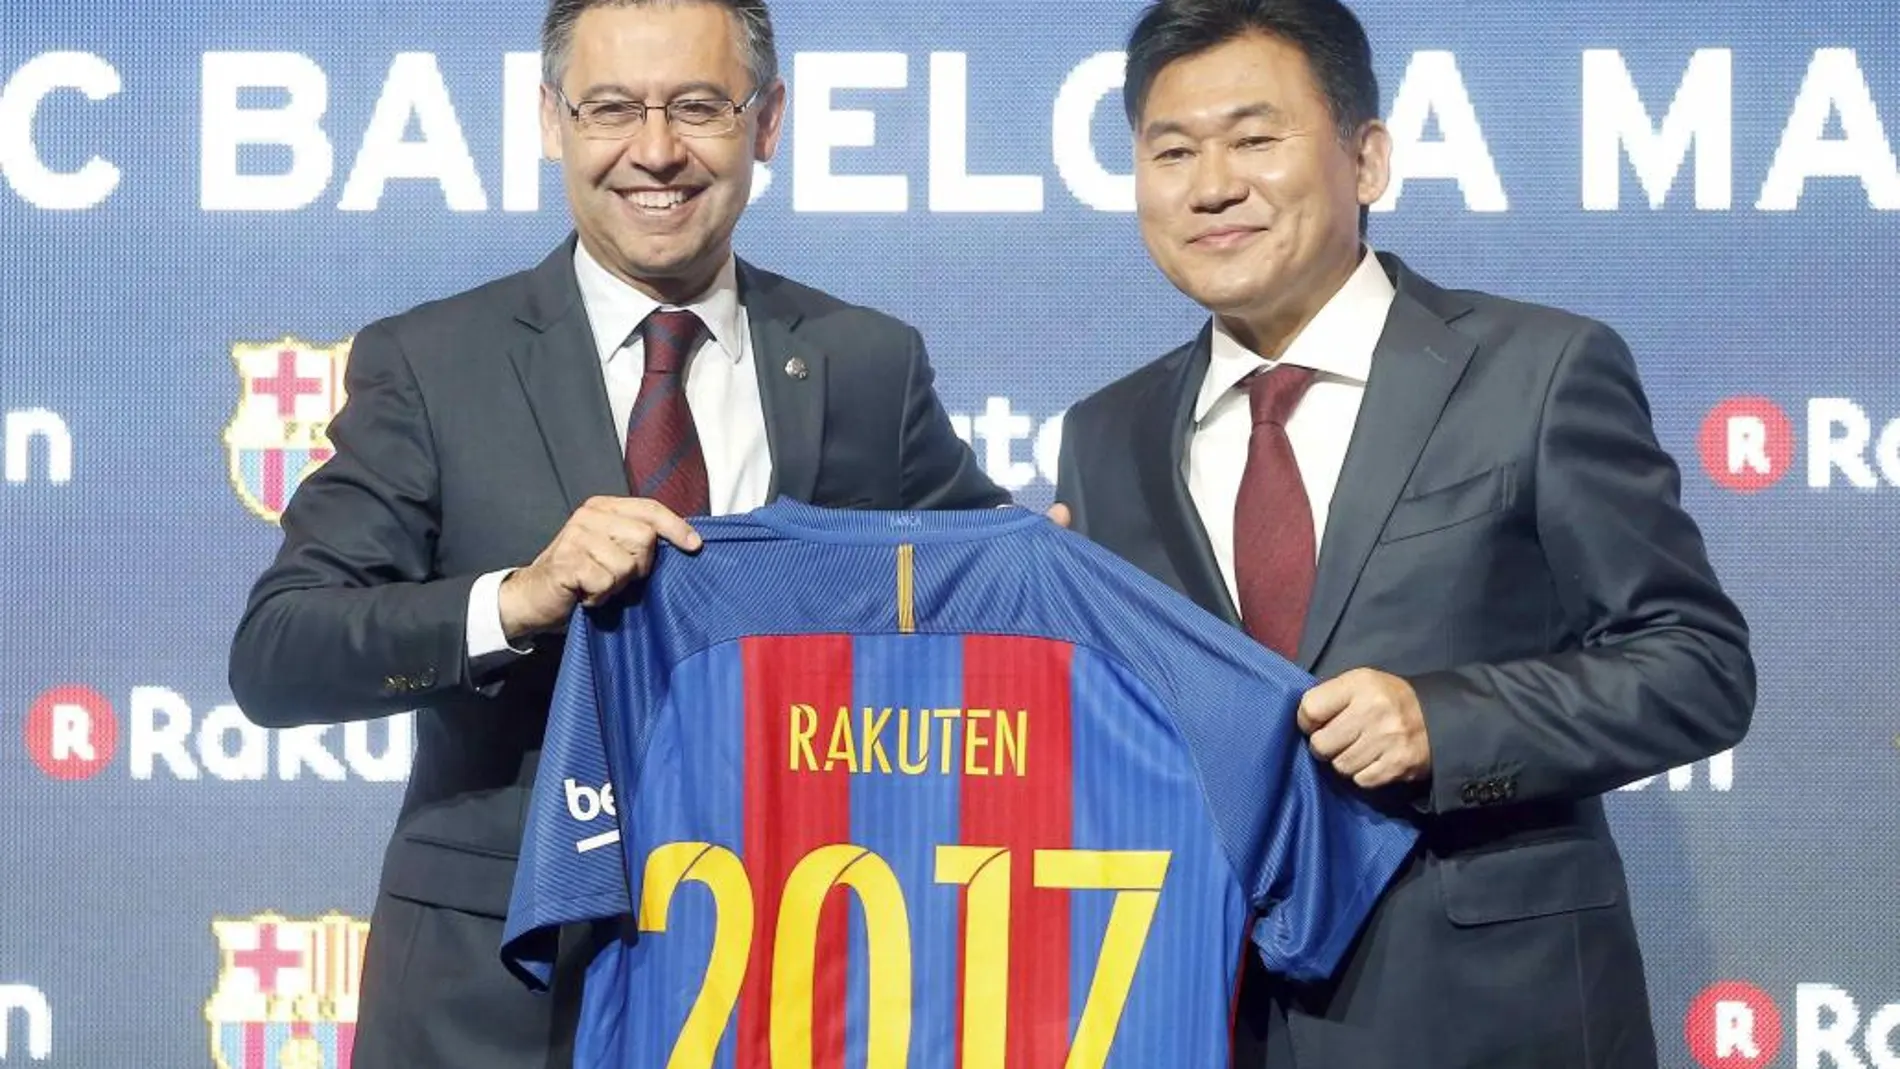 El presidente del FC Barcelona, Josep Maria Bartomeu, y el presidente de la empresa japonesa Rakuten, Hiroshi Mikitani, posan con la camiseta del nuevo patrocinador del club